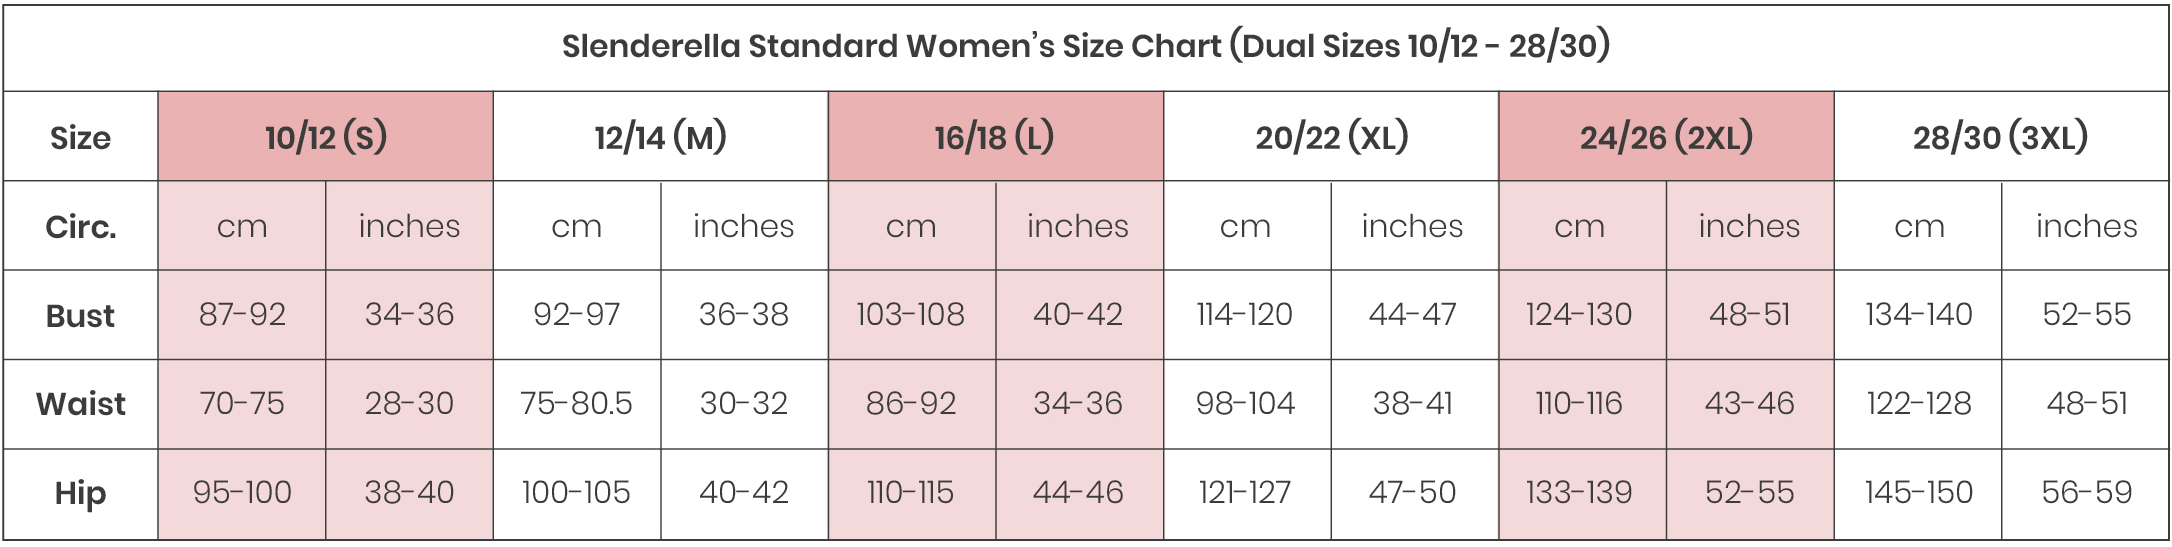 Bra Size Guide, Bras Size Calculator